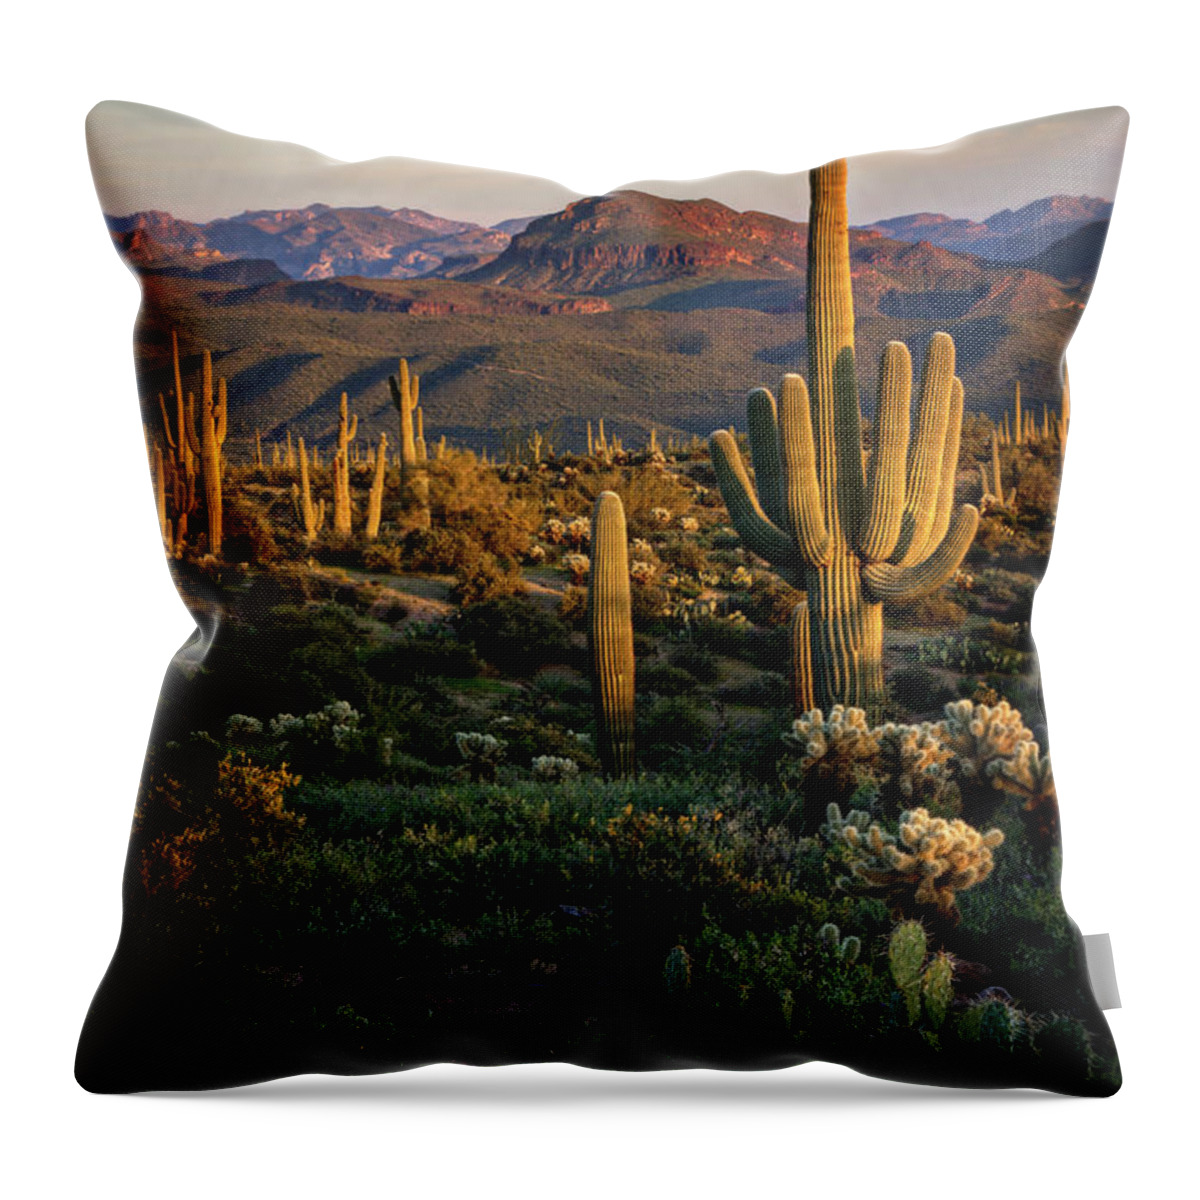 Arizon Throw Pillow featuring the photograph A Golden Sonoran Evening by Saija Lehtonen